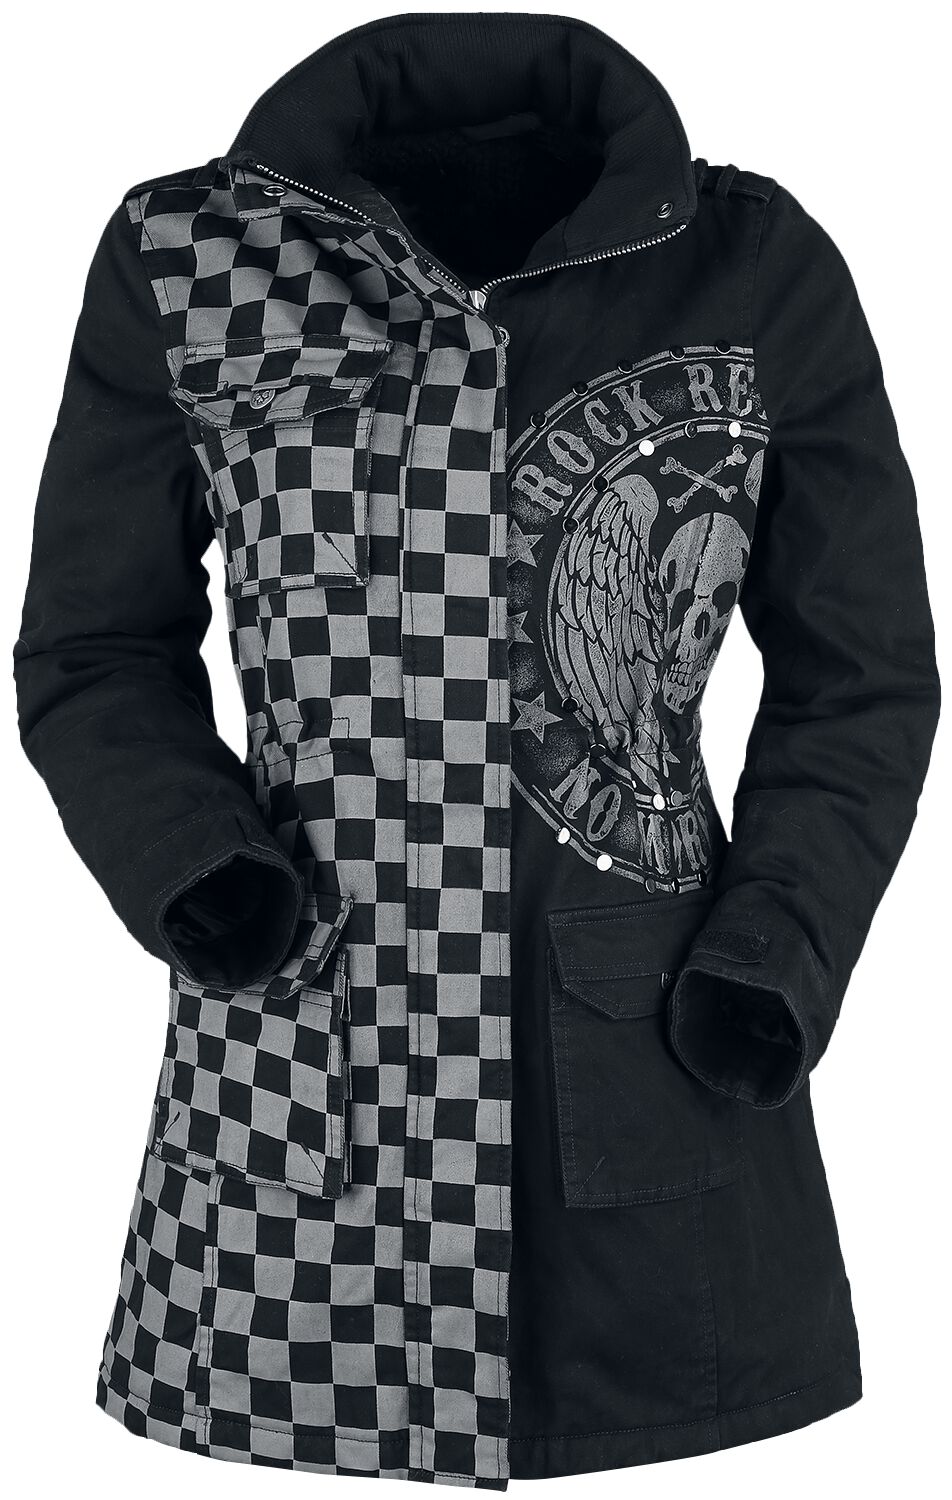 Rock Rebel by EMP - Rock Winterjacke - schwarz/graue Jacke mit Nieten und Print - S bis XXL - für Damen - Größe XL - grau/schwarz